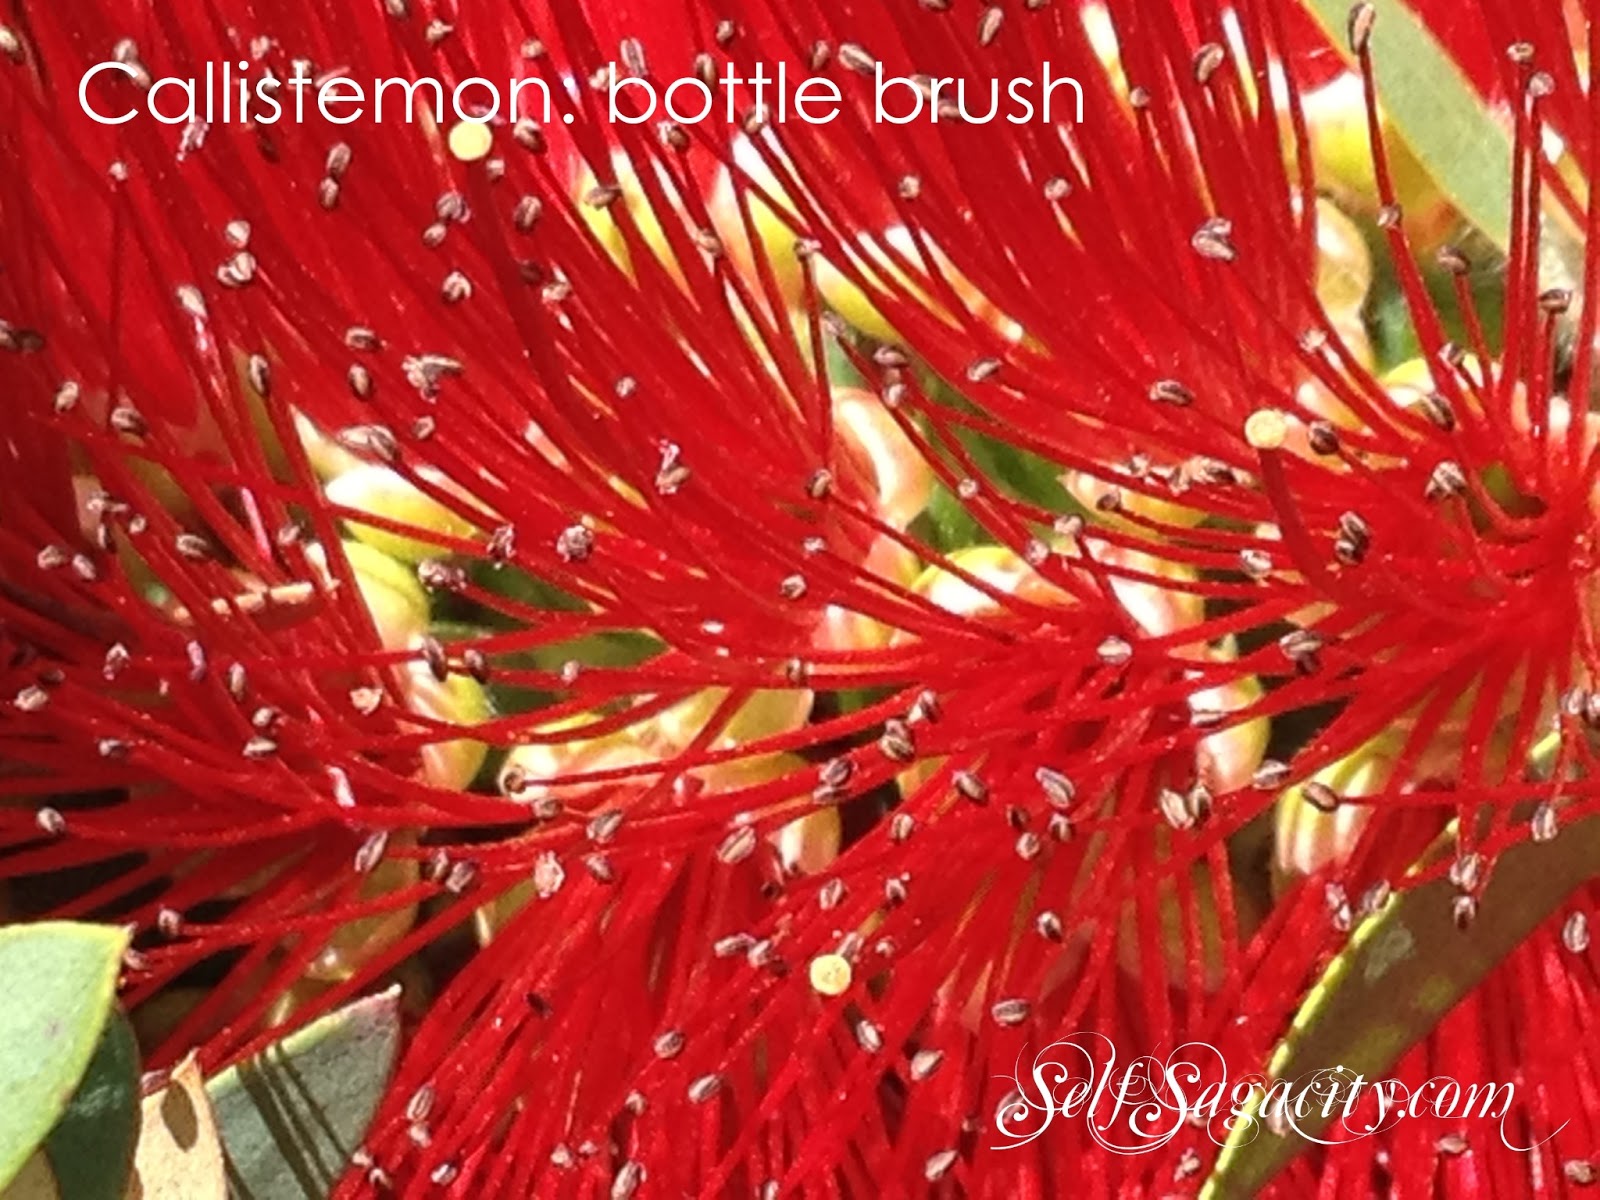 Red Callistemon: Red bottle brush flowers